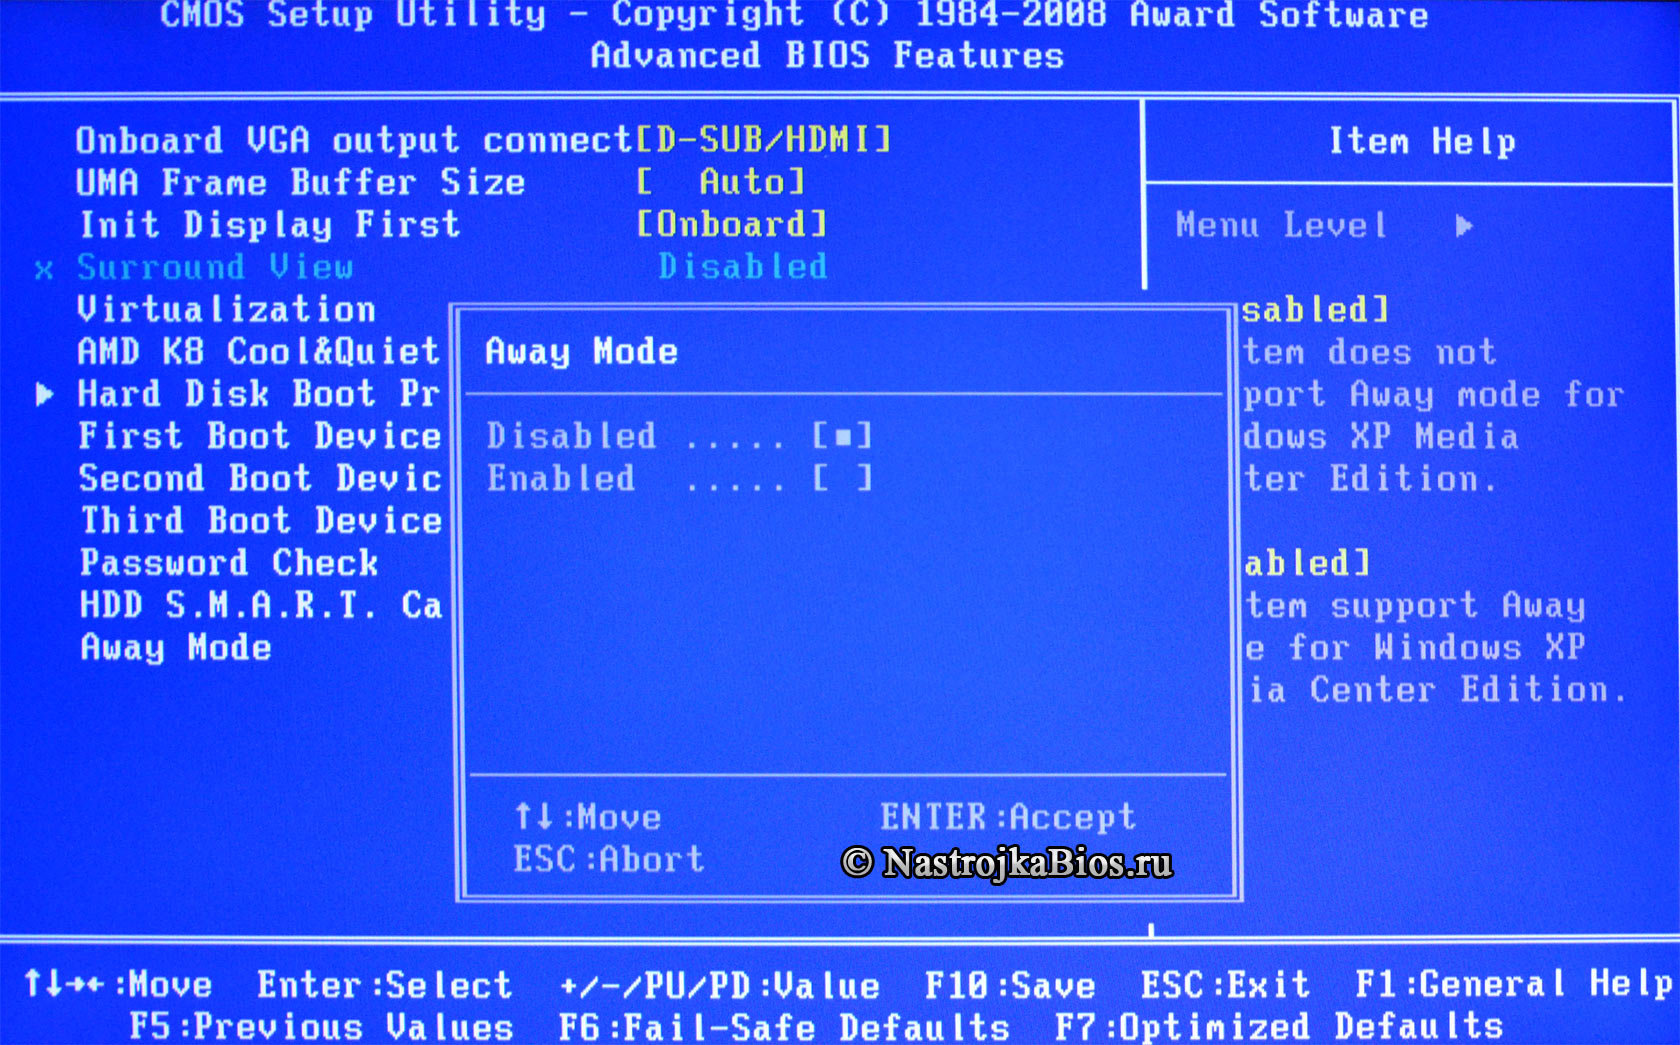 Опция BIOS Away Mode - неполное выключение компьютера для медиа-центров.